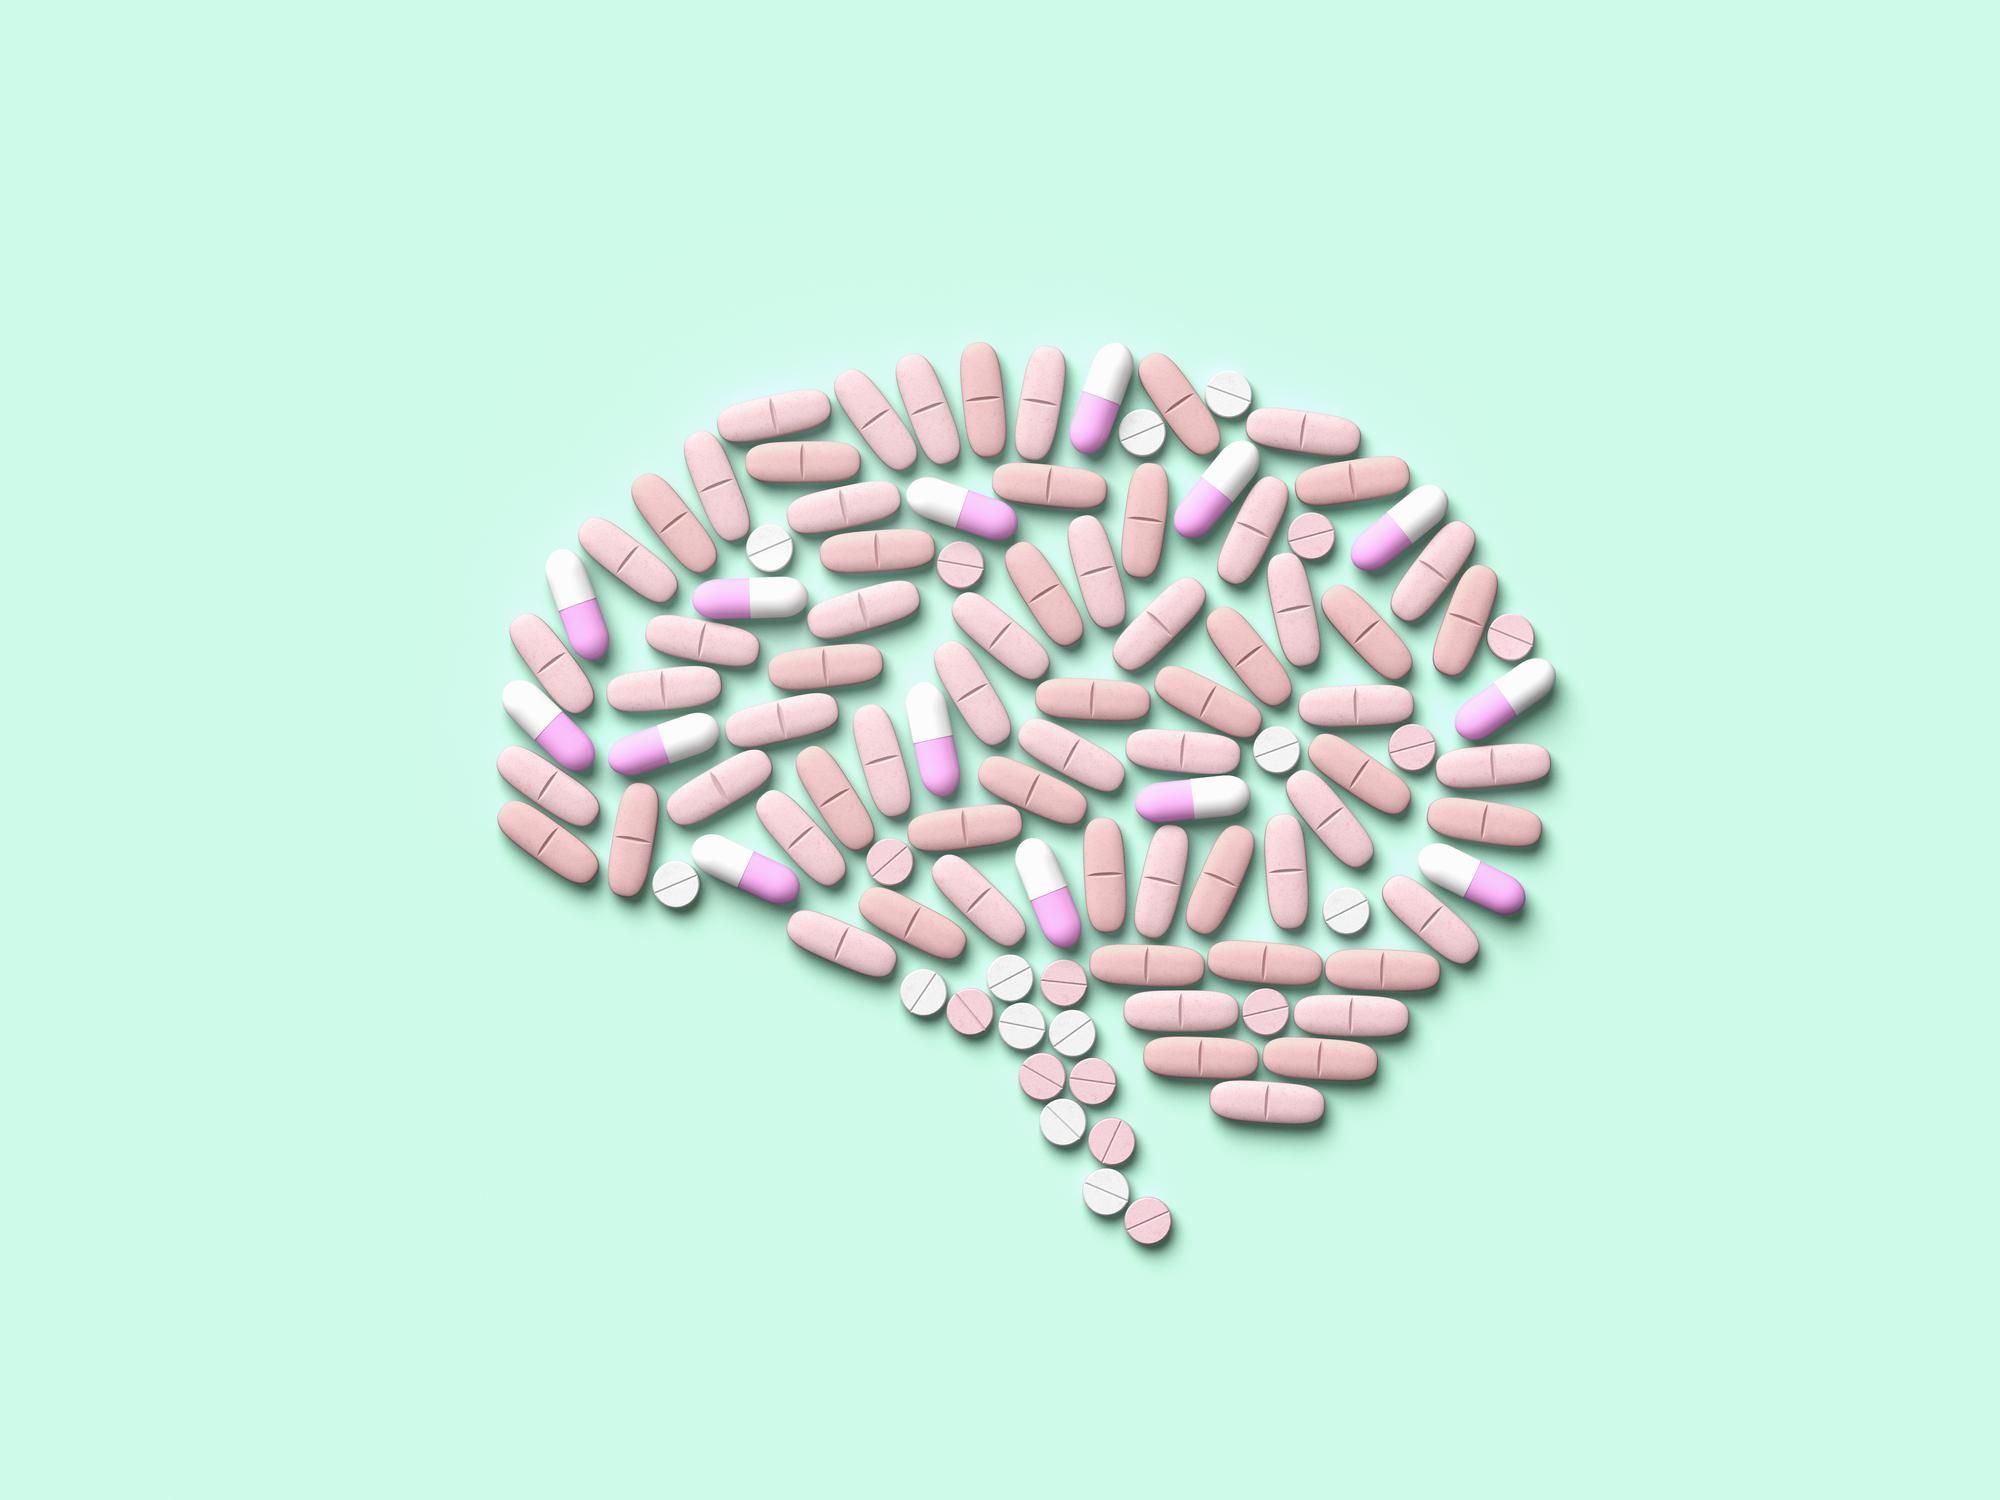 Препараты от шизофрении опасно влияют на когнитивное здоровье: исследование